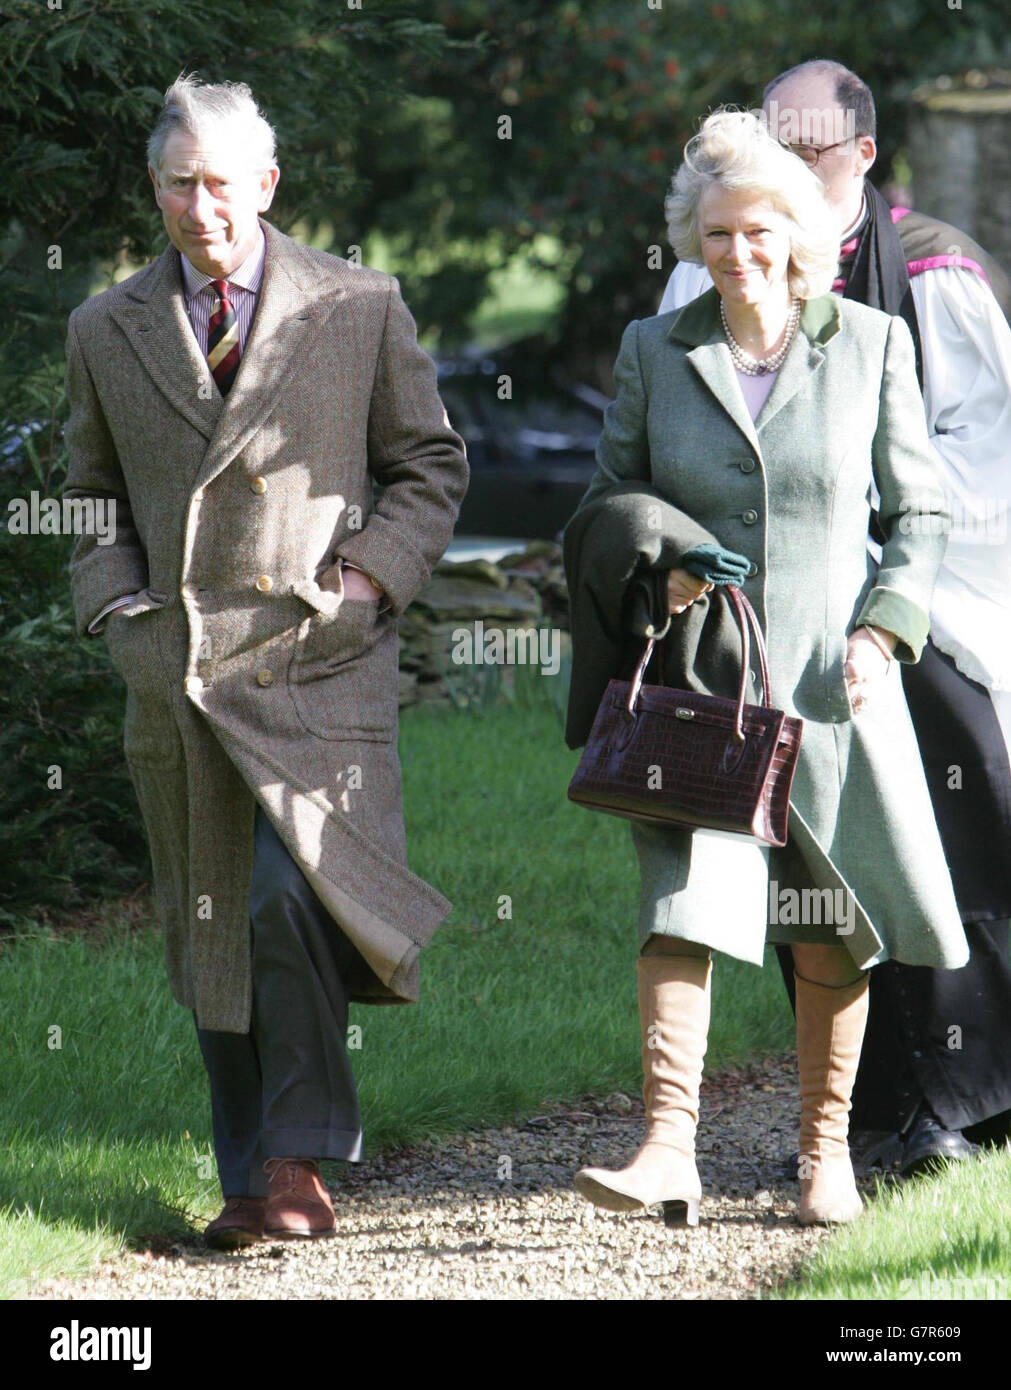 Le Prince de Galles et partenaire Camilla Parker Bowles. Banque D'Images